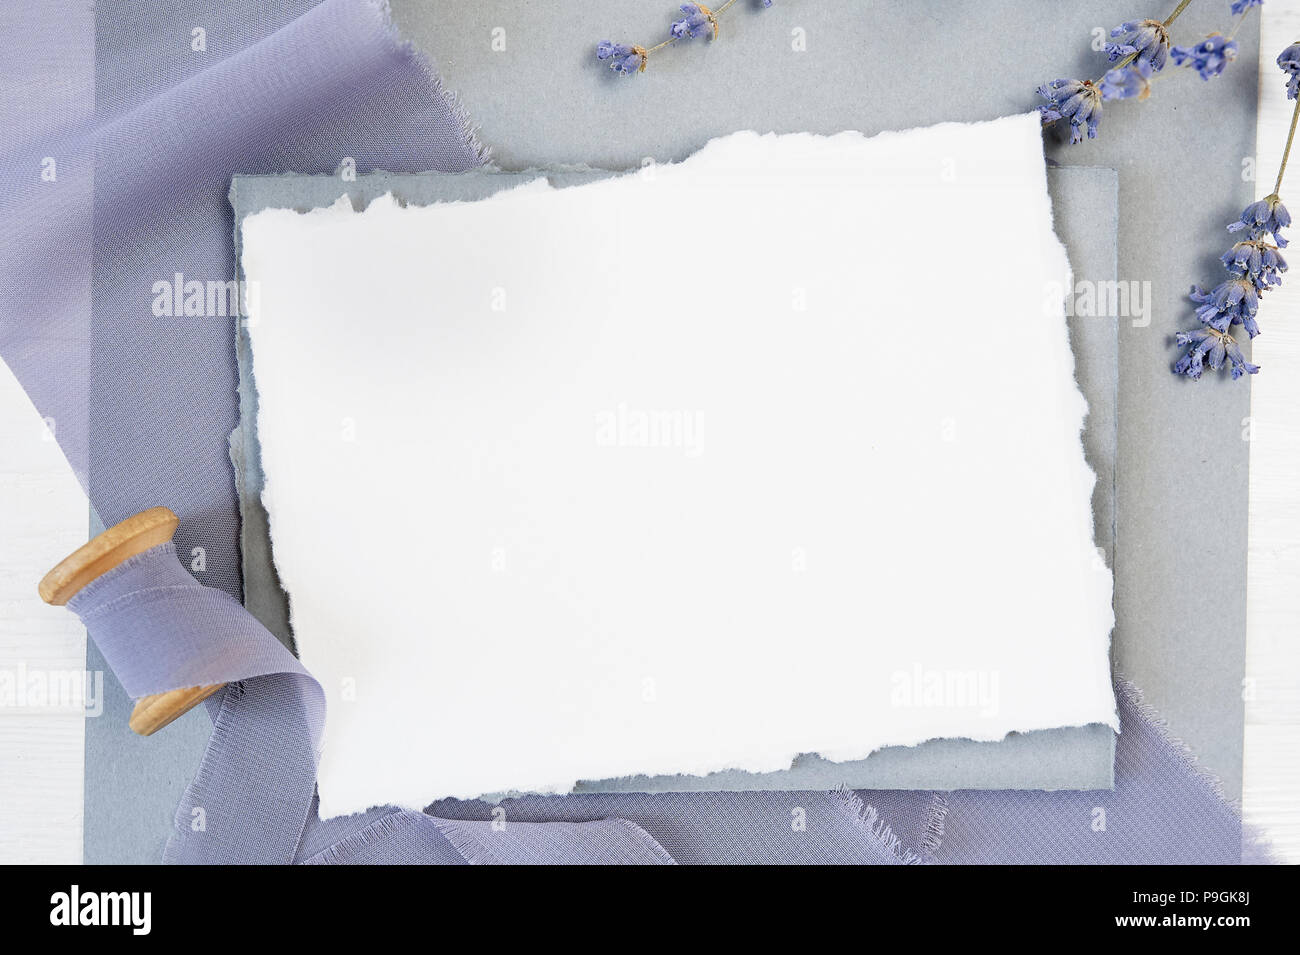 Carte de voeux vierge blanc ruban sur un fond de toile bleue avec des fleurs de lavande sur un fond blanc. Immersive avec enveloppe et carte vierge. Mise à plat. Vue d'en haut Banque D'Images